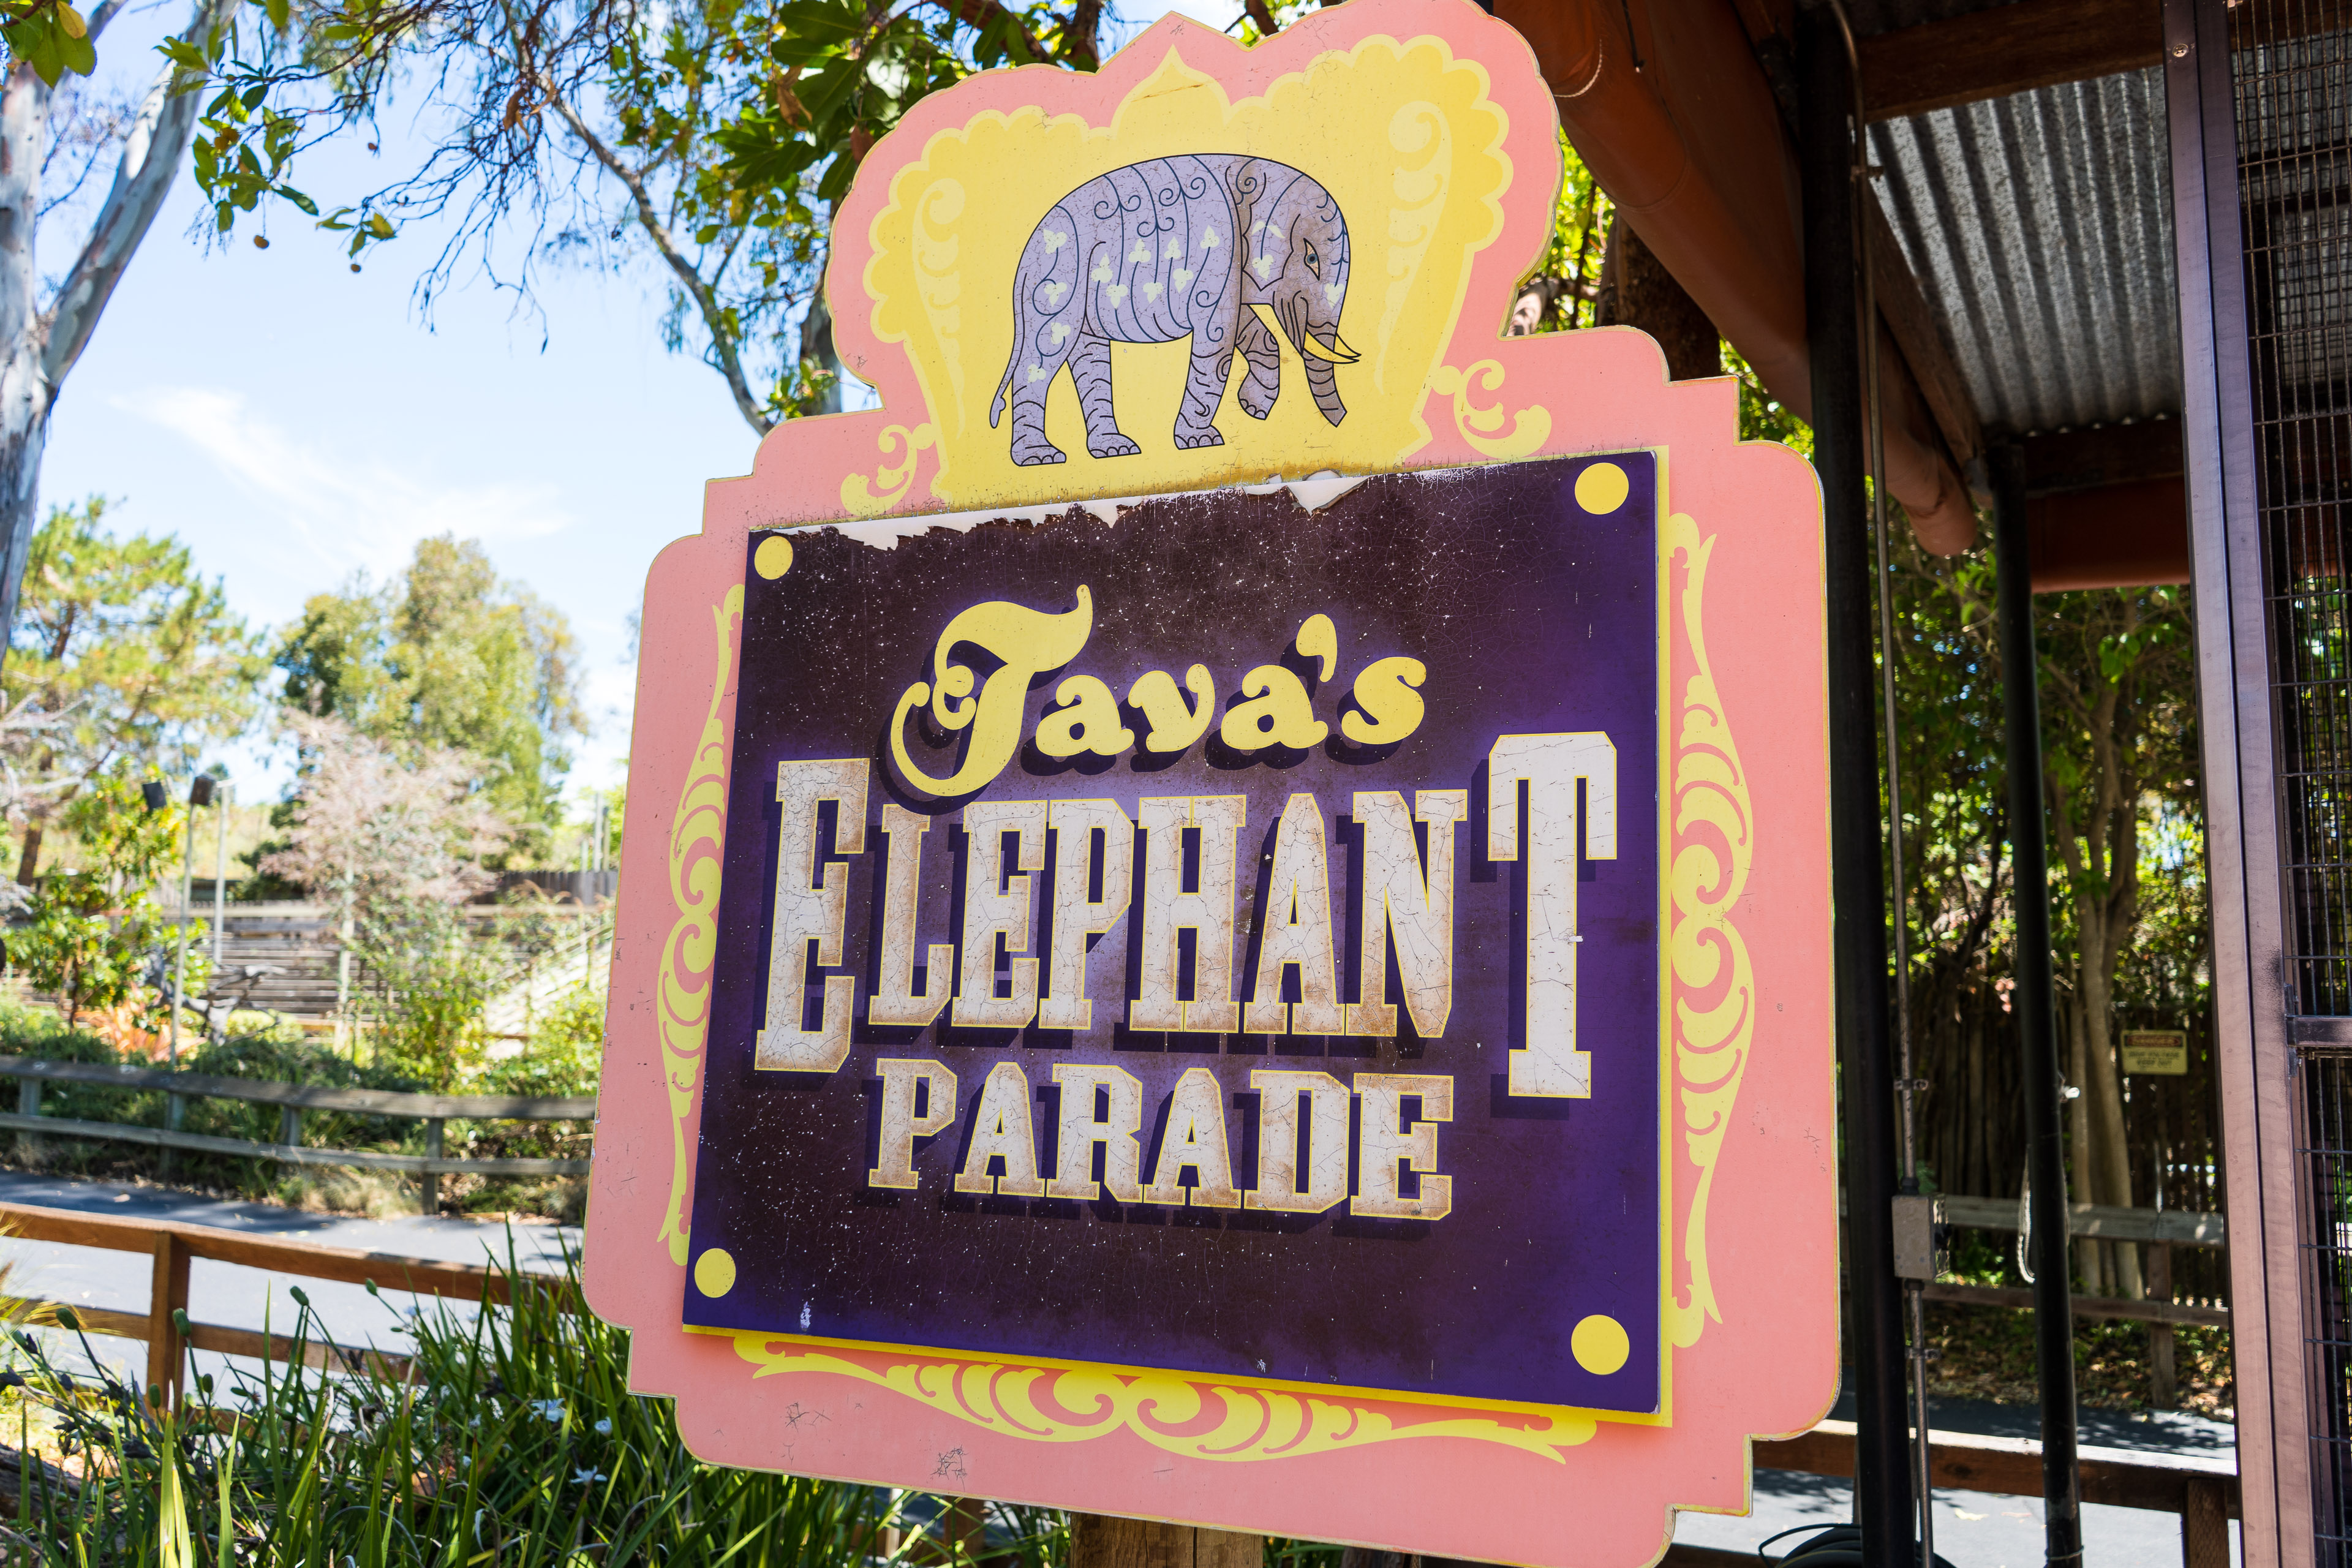 Tava's Elephant Parade